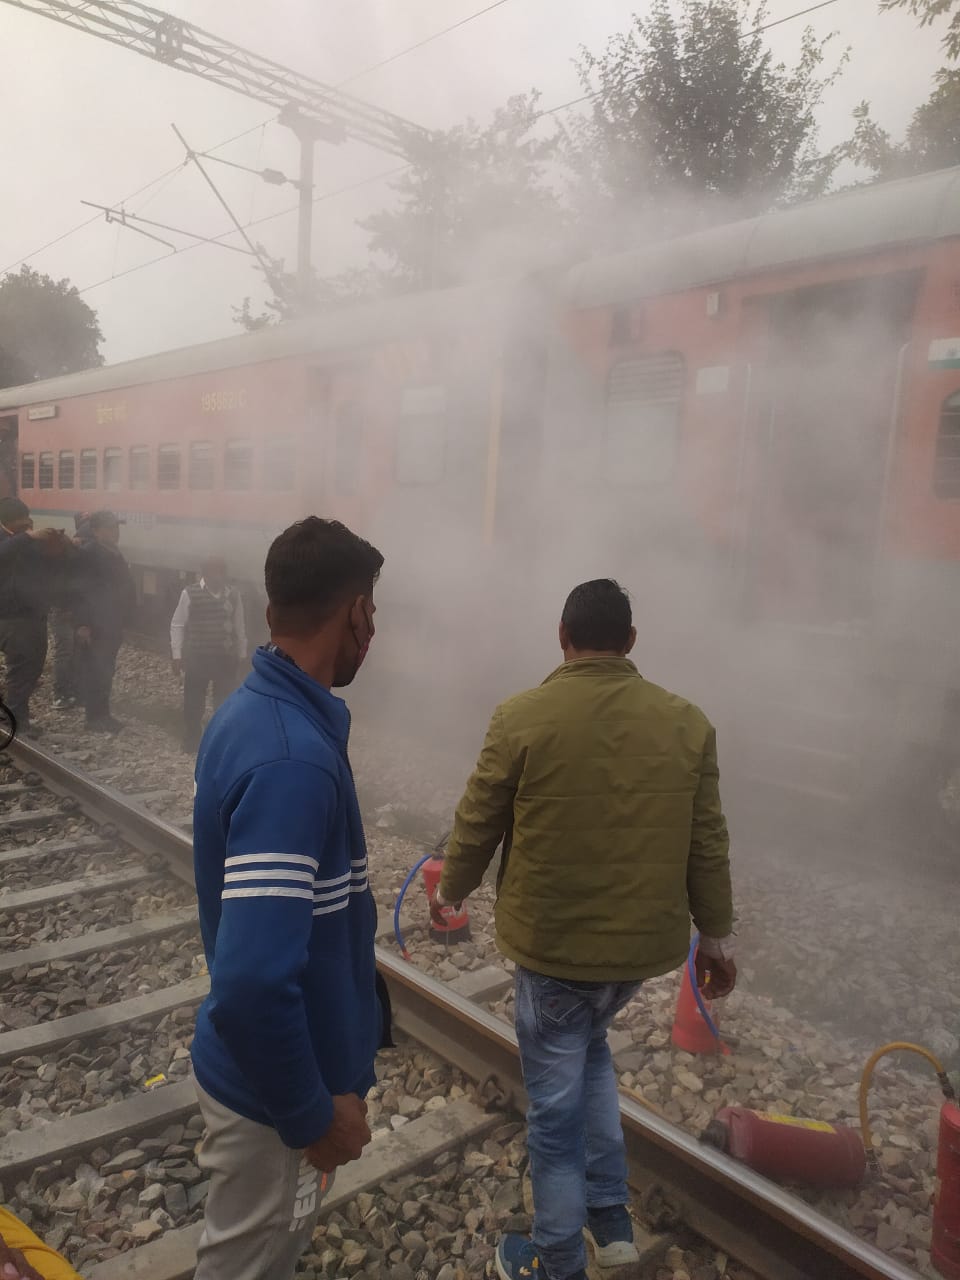 पिलखुवा रेलवे स्टेशन पर ट्रेन के पहियों से निकला धुआं